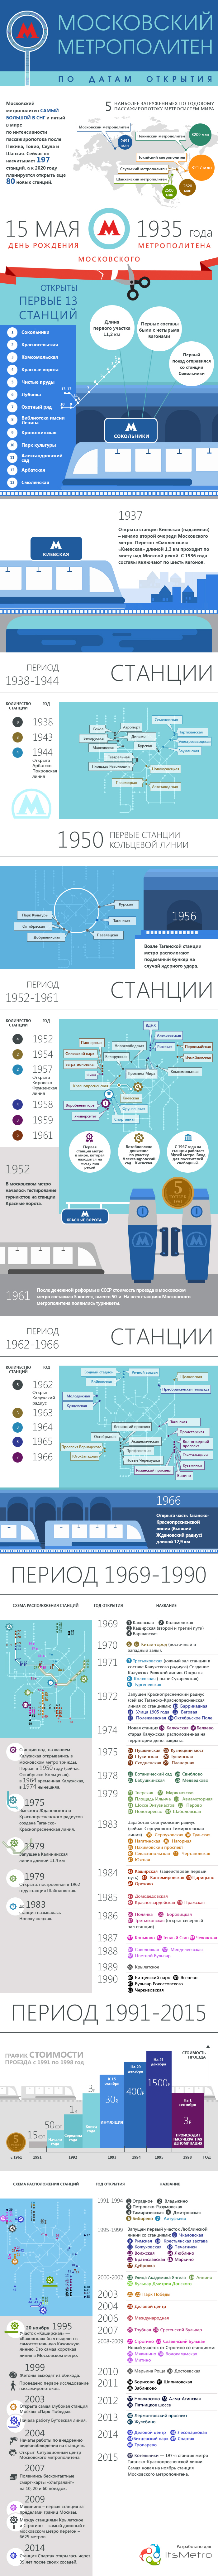 Пример инфографики для компании, продающей рекламу в московском метро